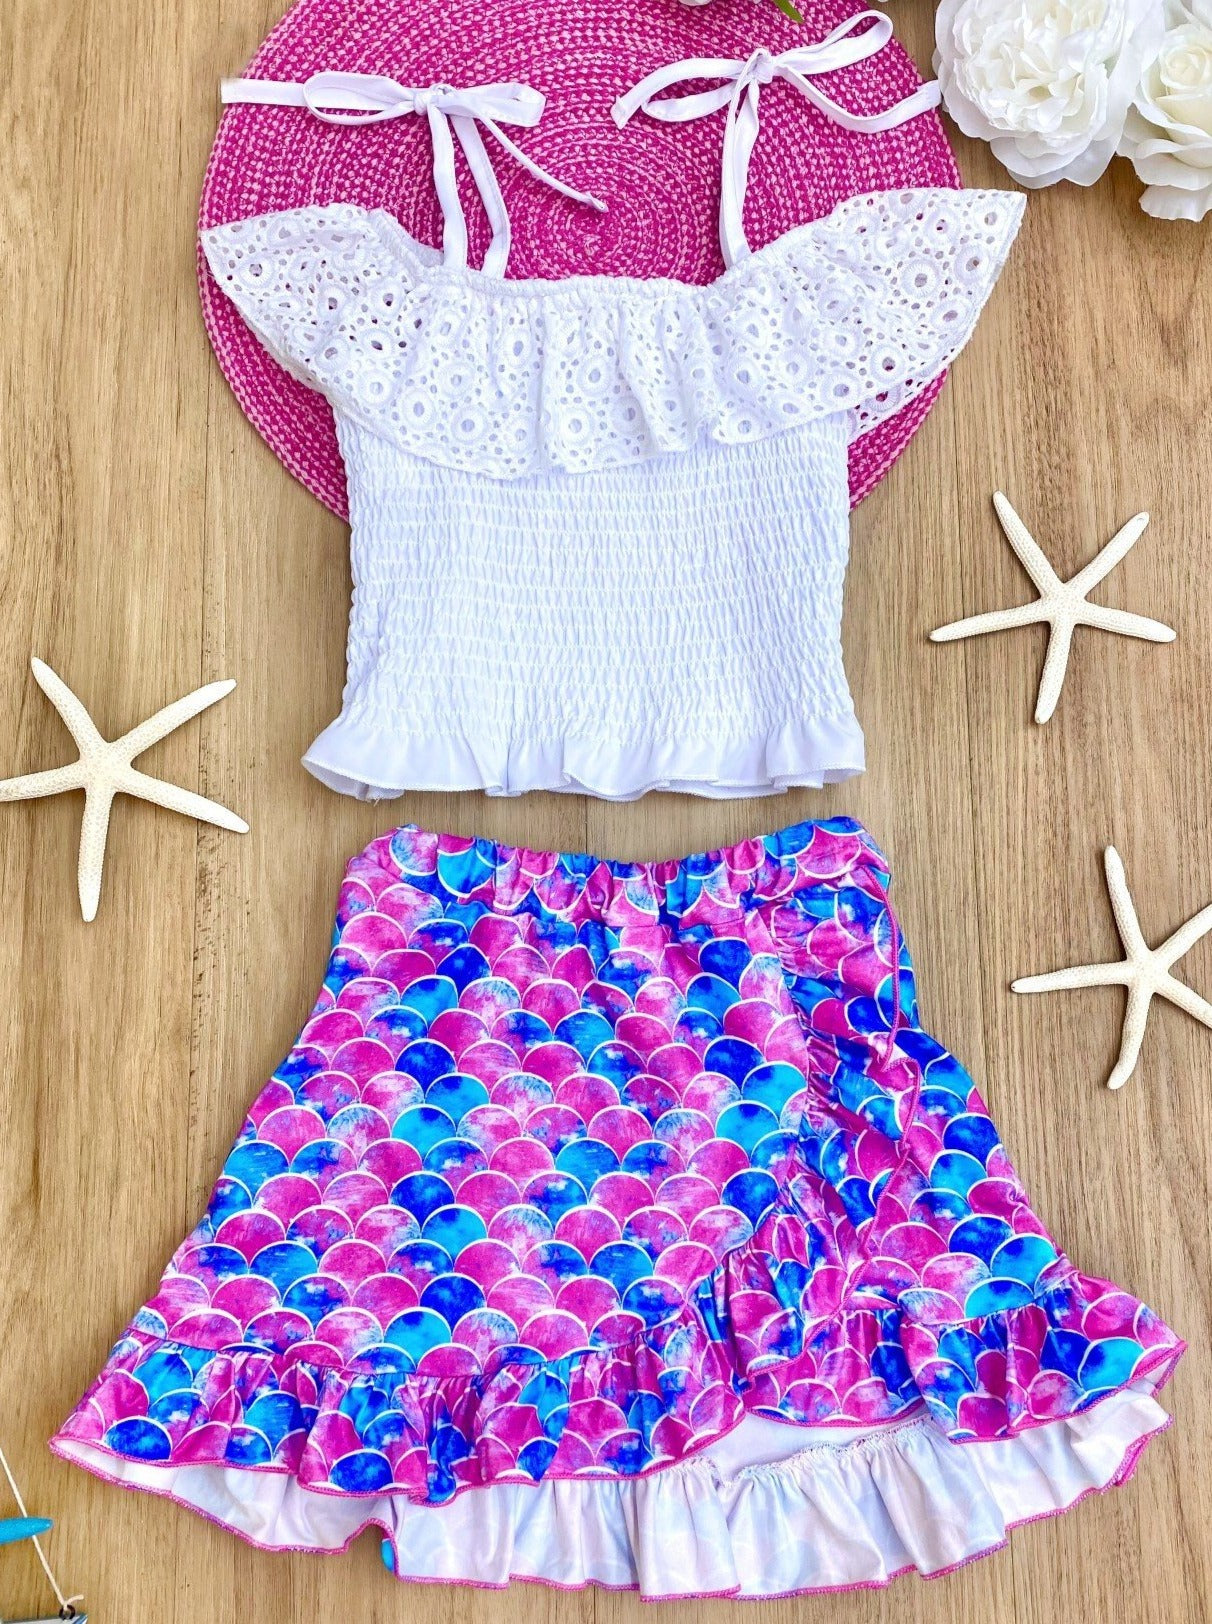 Toddler Spring Outfits | Girls Mermaid Smocked Top & Wrap Skirt Set